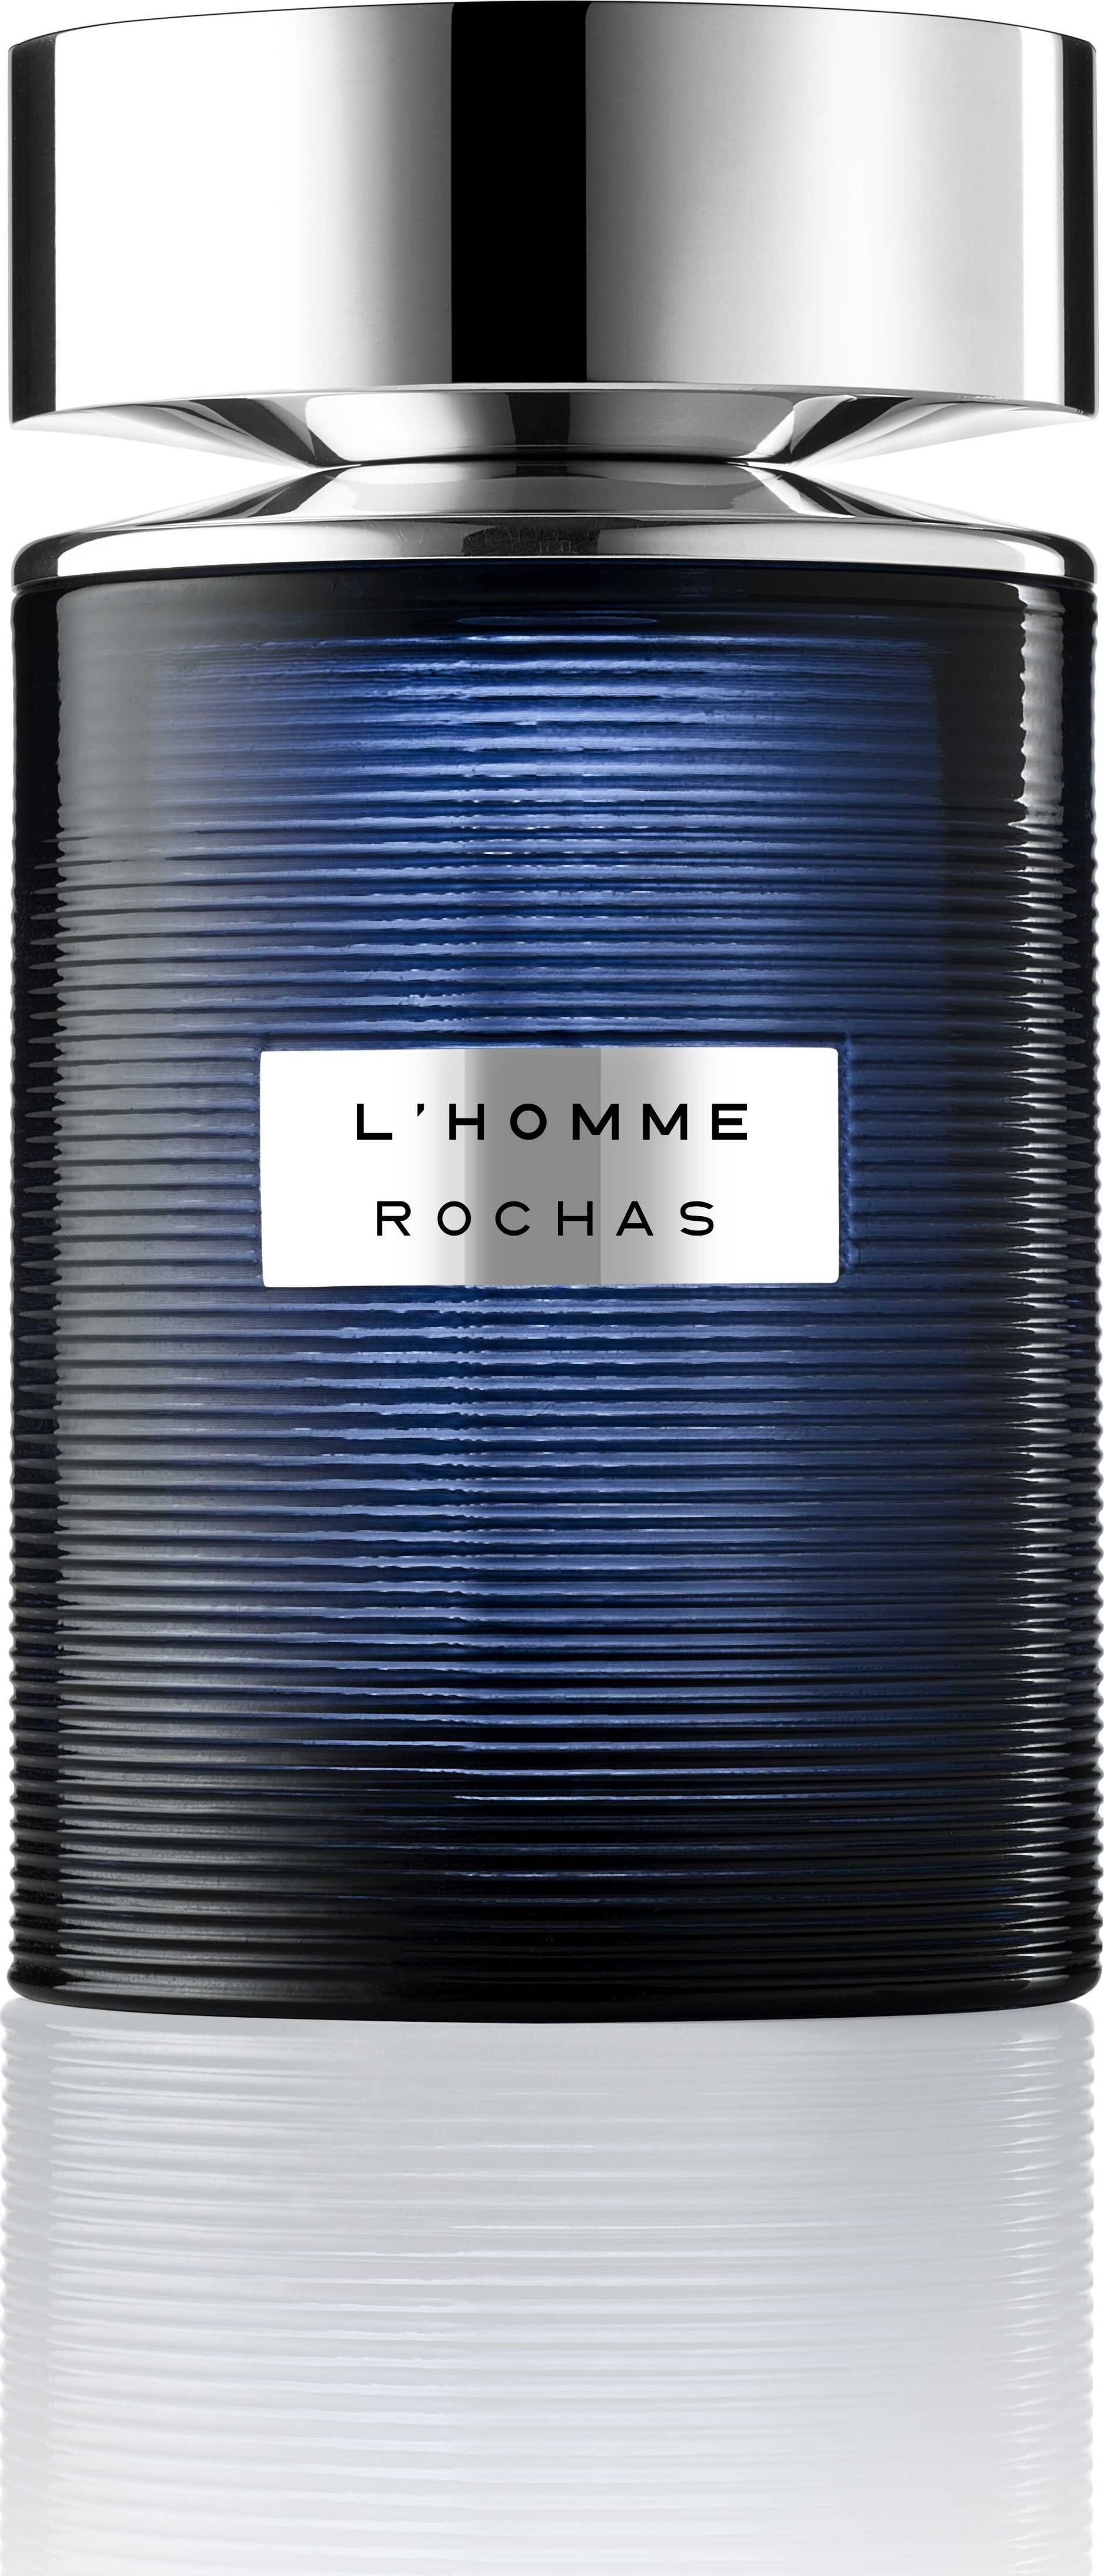 Rochas L&apos;Homme Rochas EDT 100 ml